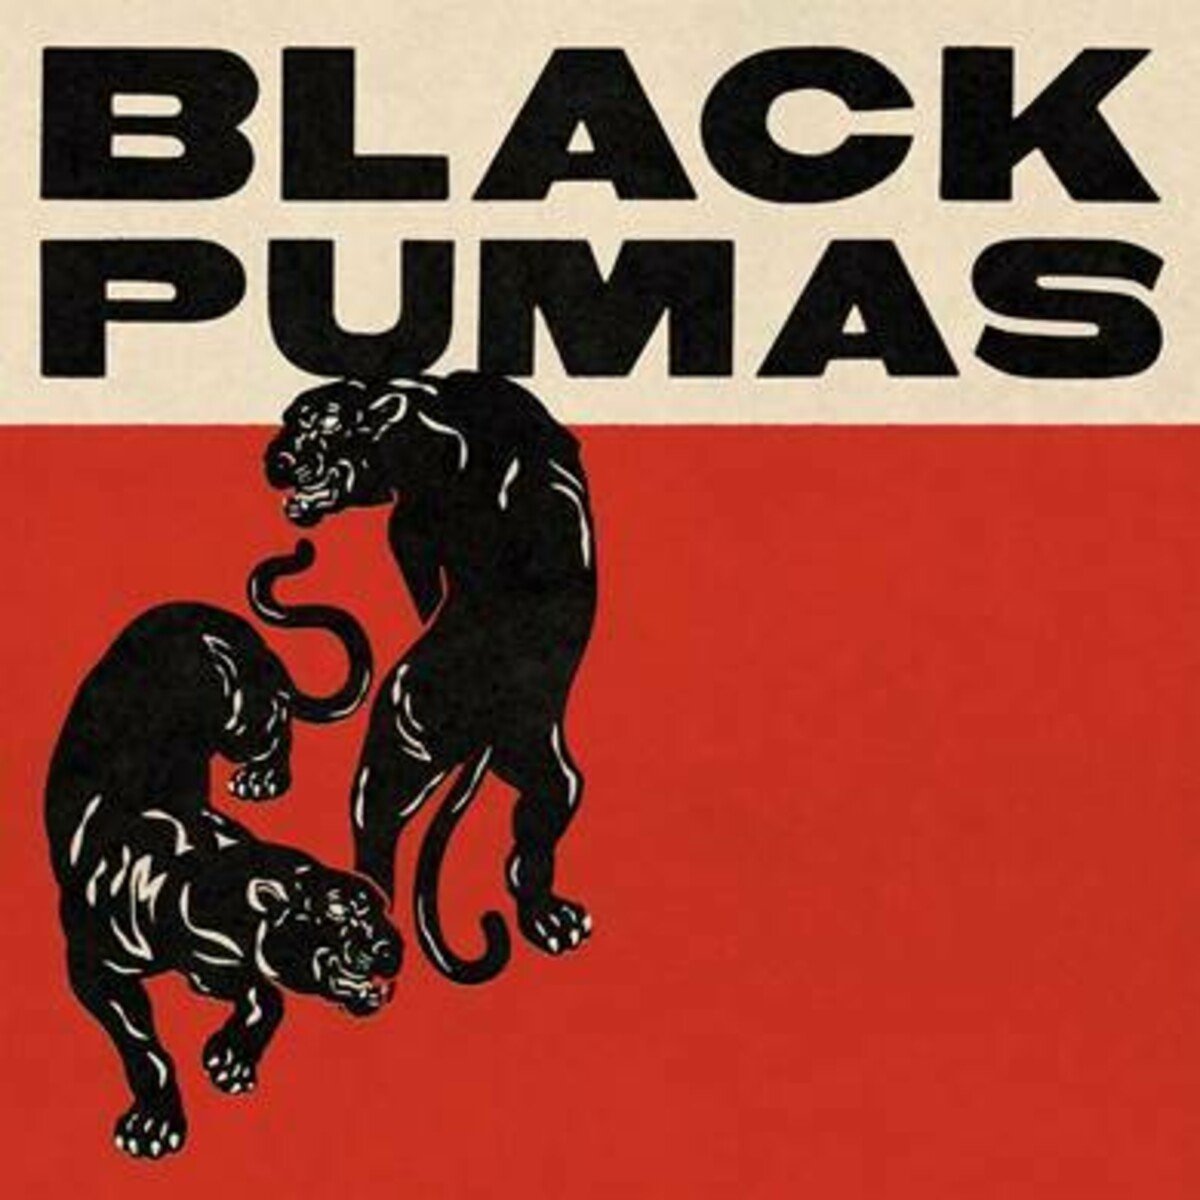 Black Pumas - Black Pumas (CD) - Black Pumas